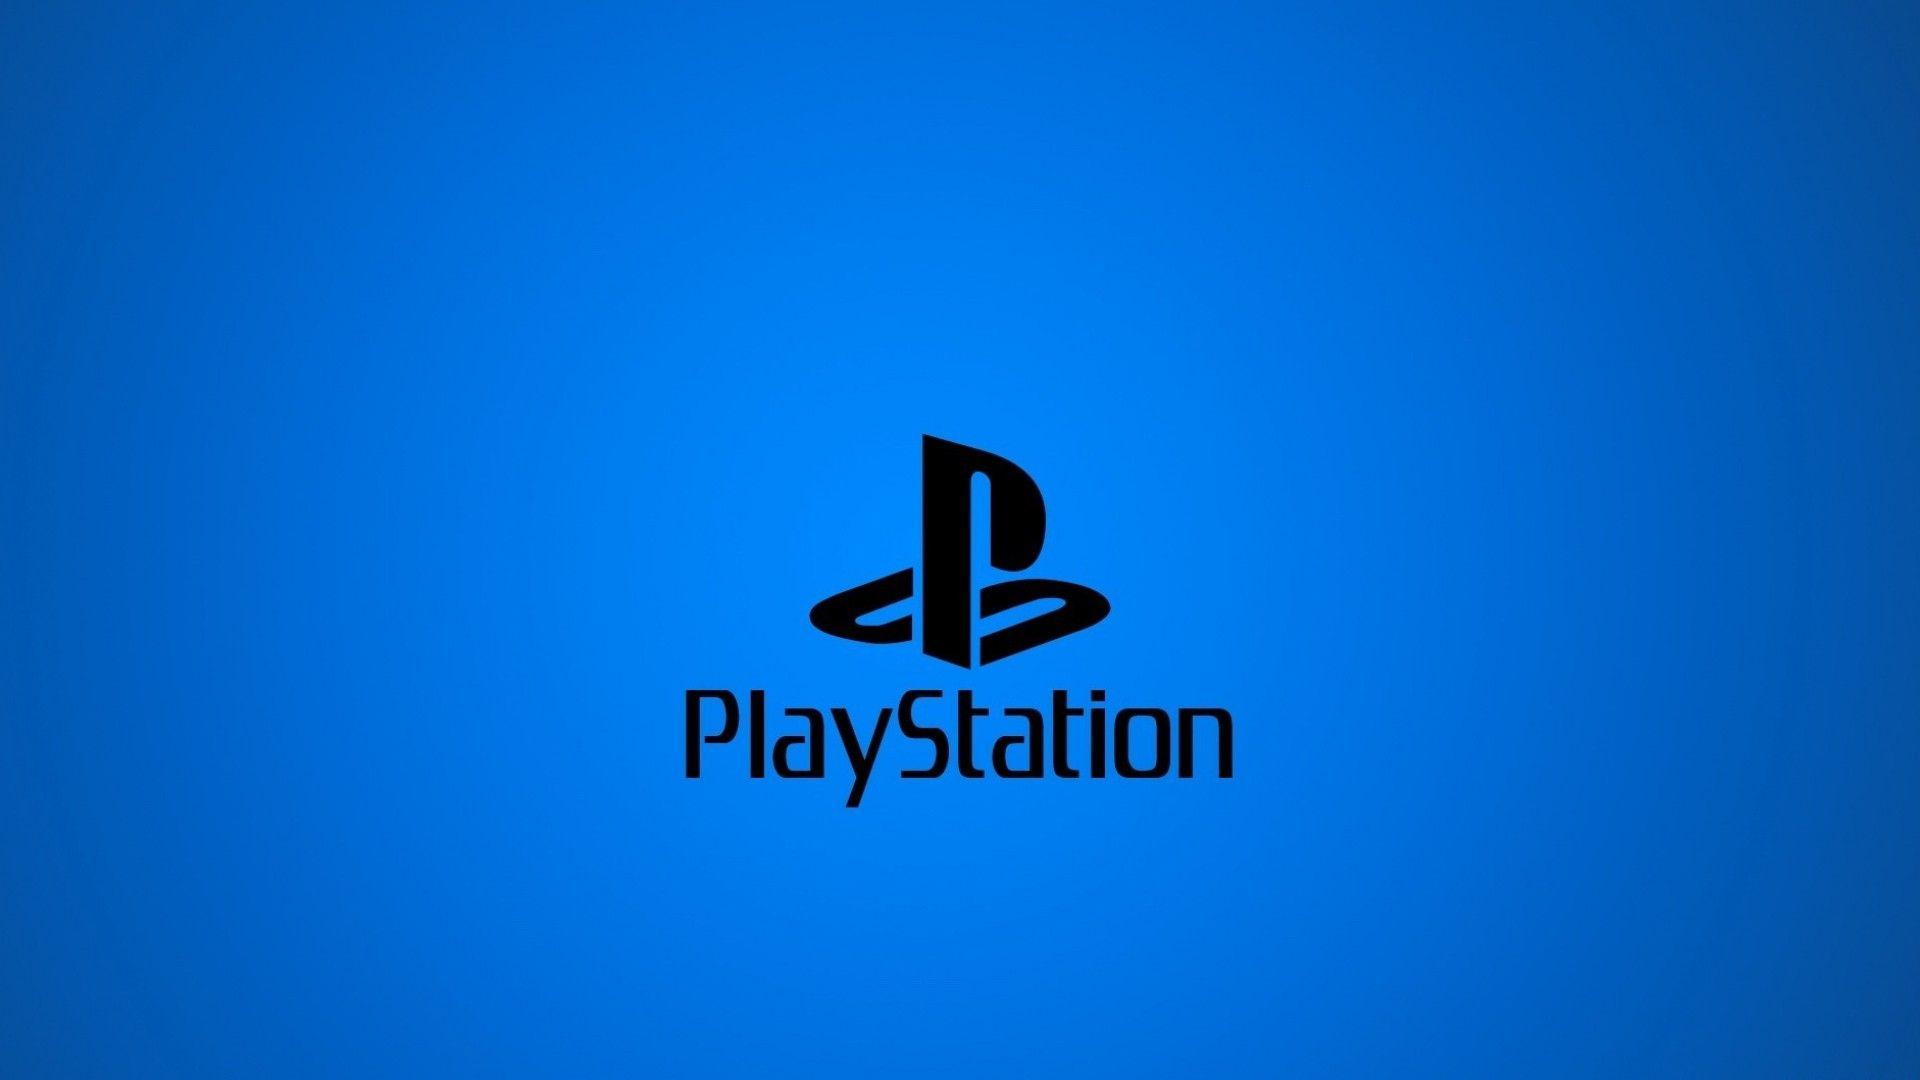 Hình nền Playstation 1920x1080, Trò chơi điện tử, Hình ảnh HQ Playstation.  Hình nền 4K 2019